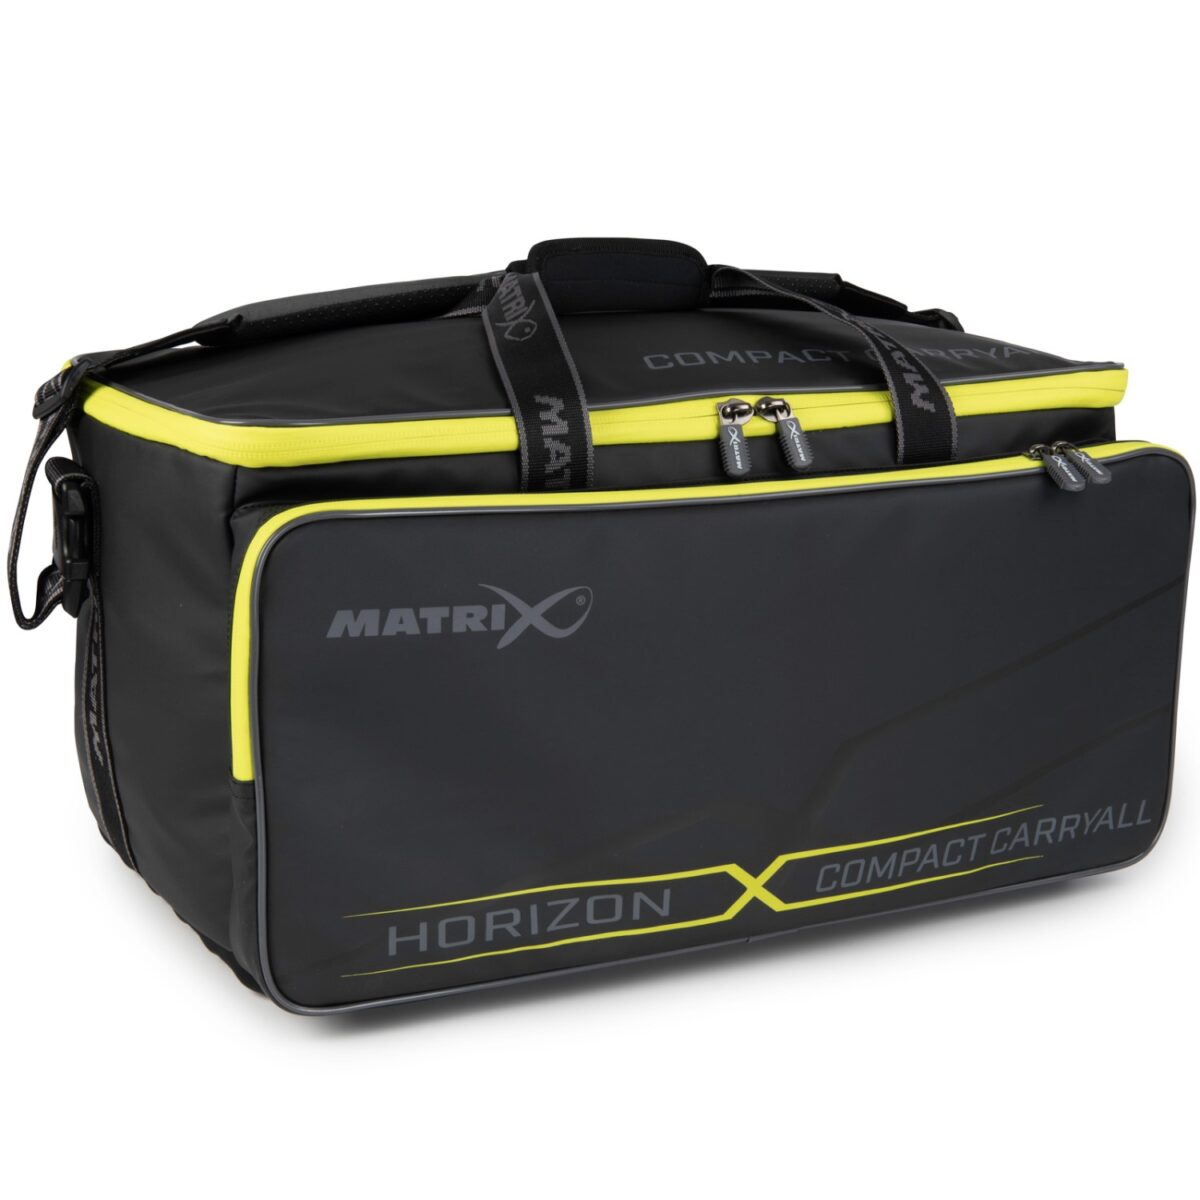 Чанта рибарска Matrix Horizon X Compact Carryall